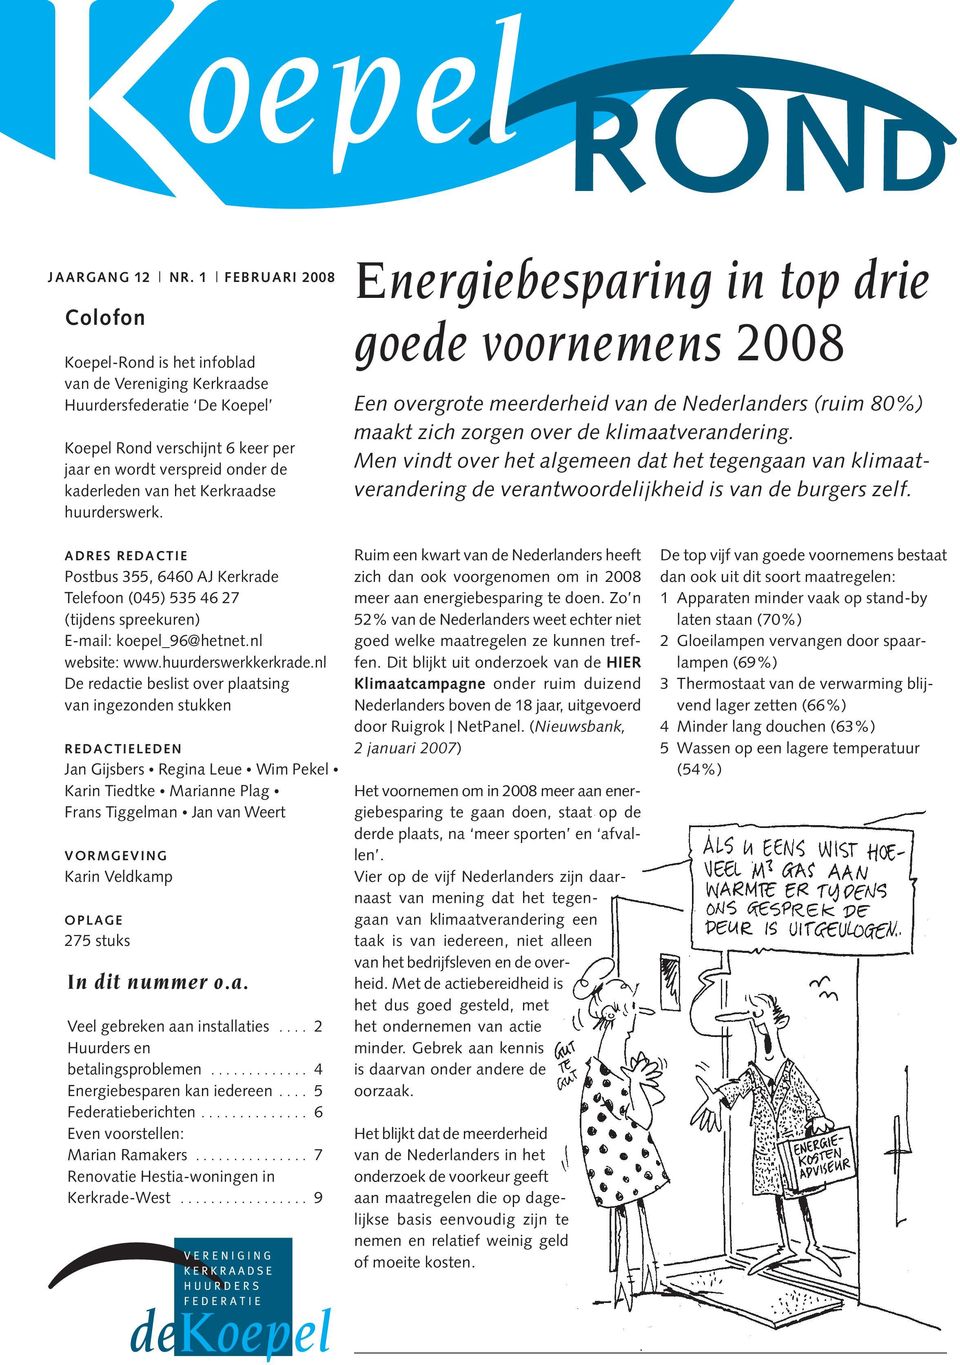 Kerkraadse huurderswerk. Energiebesparing in top drie goede voornemens 2008 Een overgrote meerderheid van de Nederlanders (ruim 80%) maakt zich zorgen over de klimaatverandering.